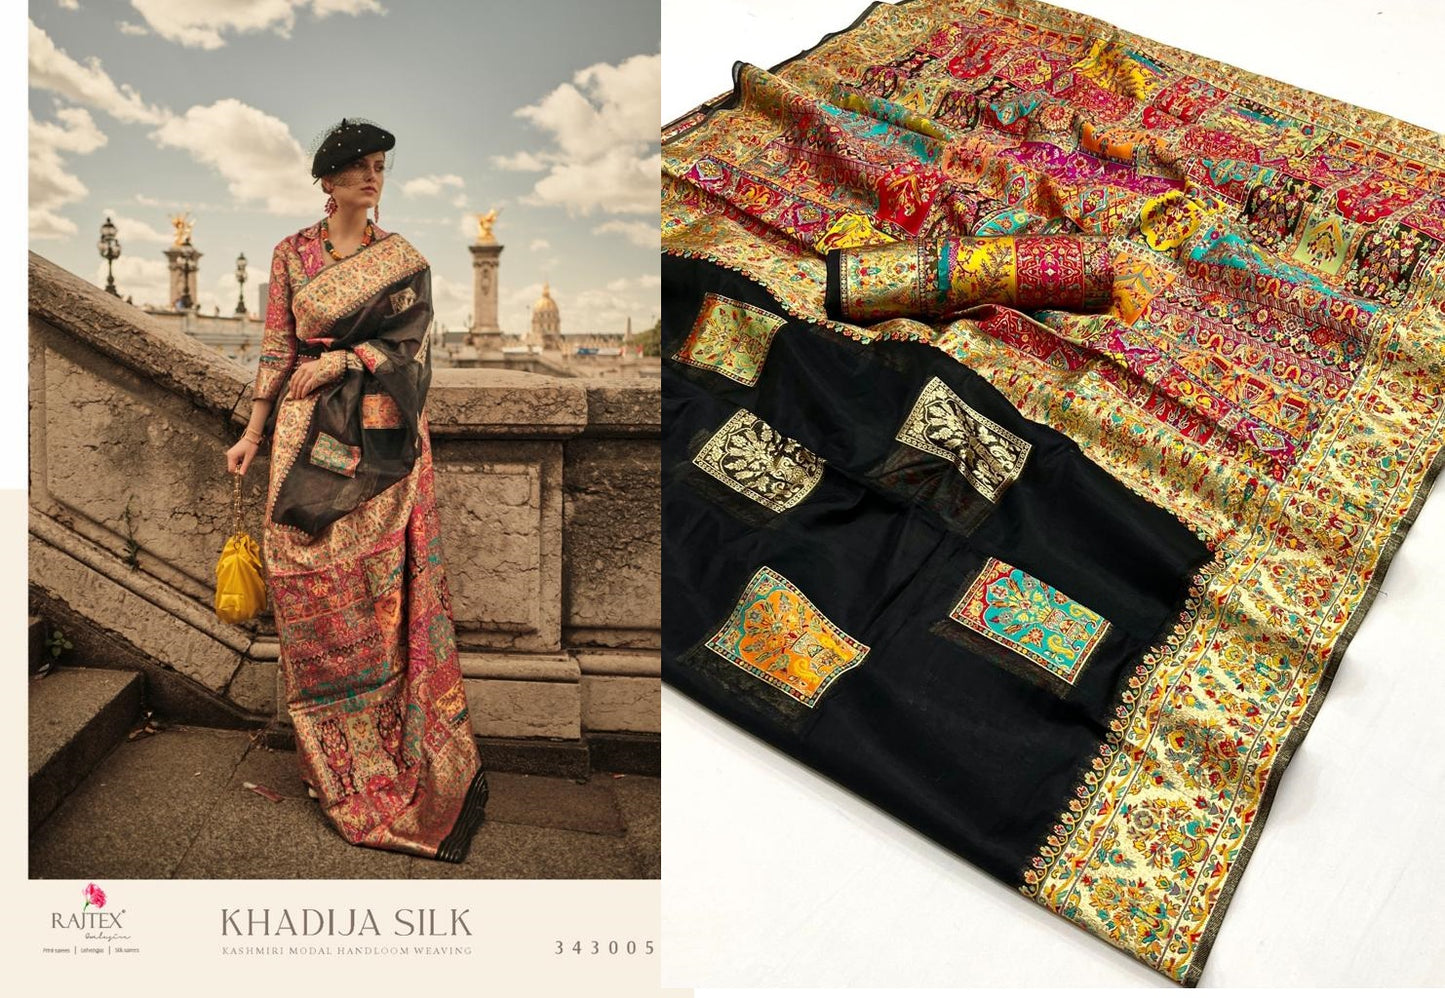 Khadija Silk Rajtex Modal Sarees